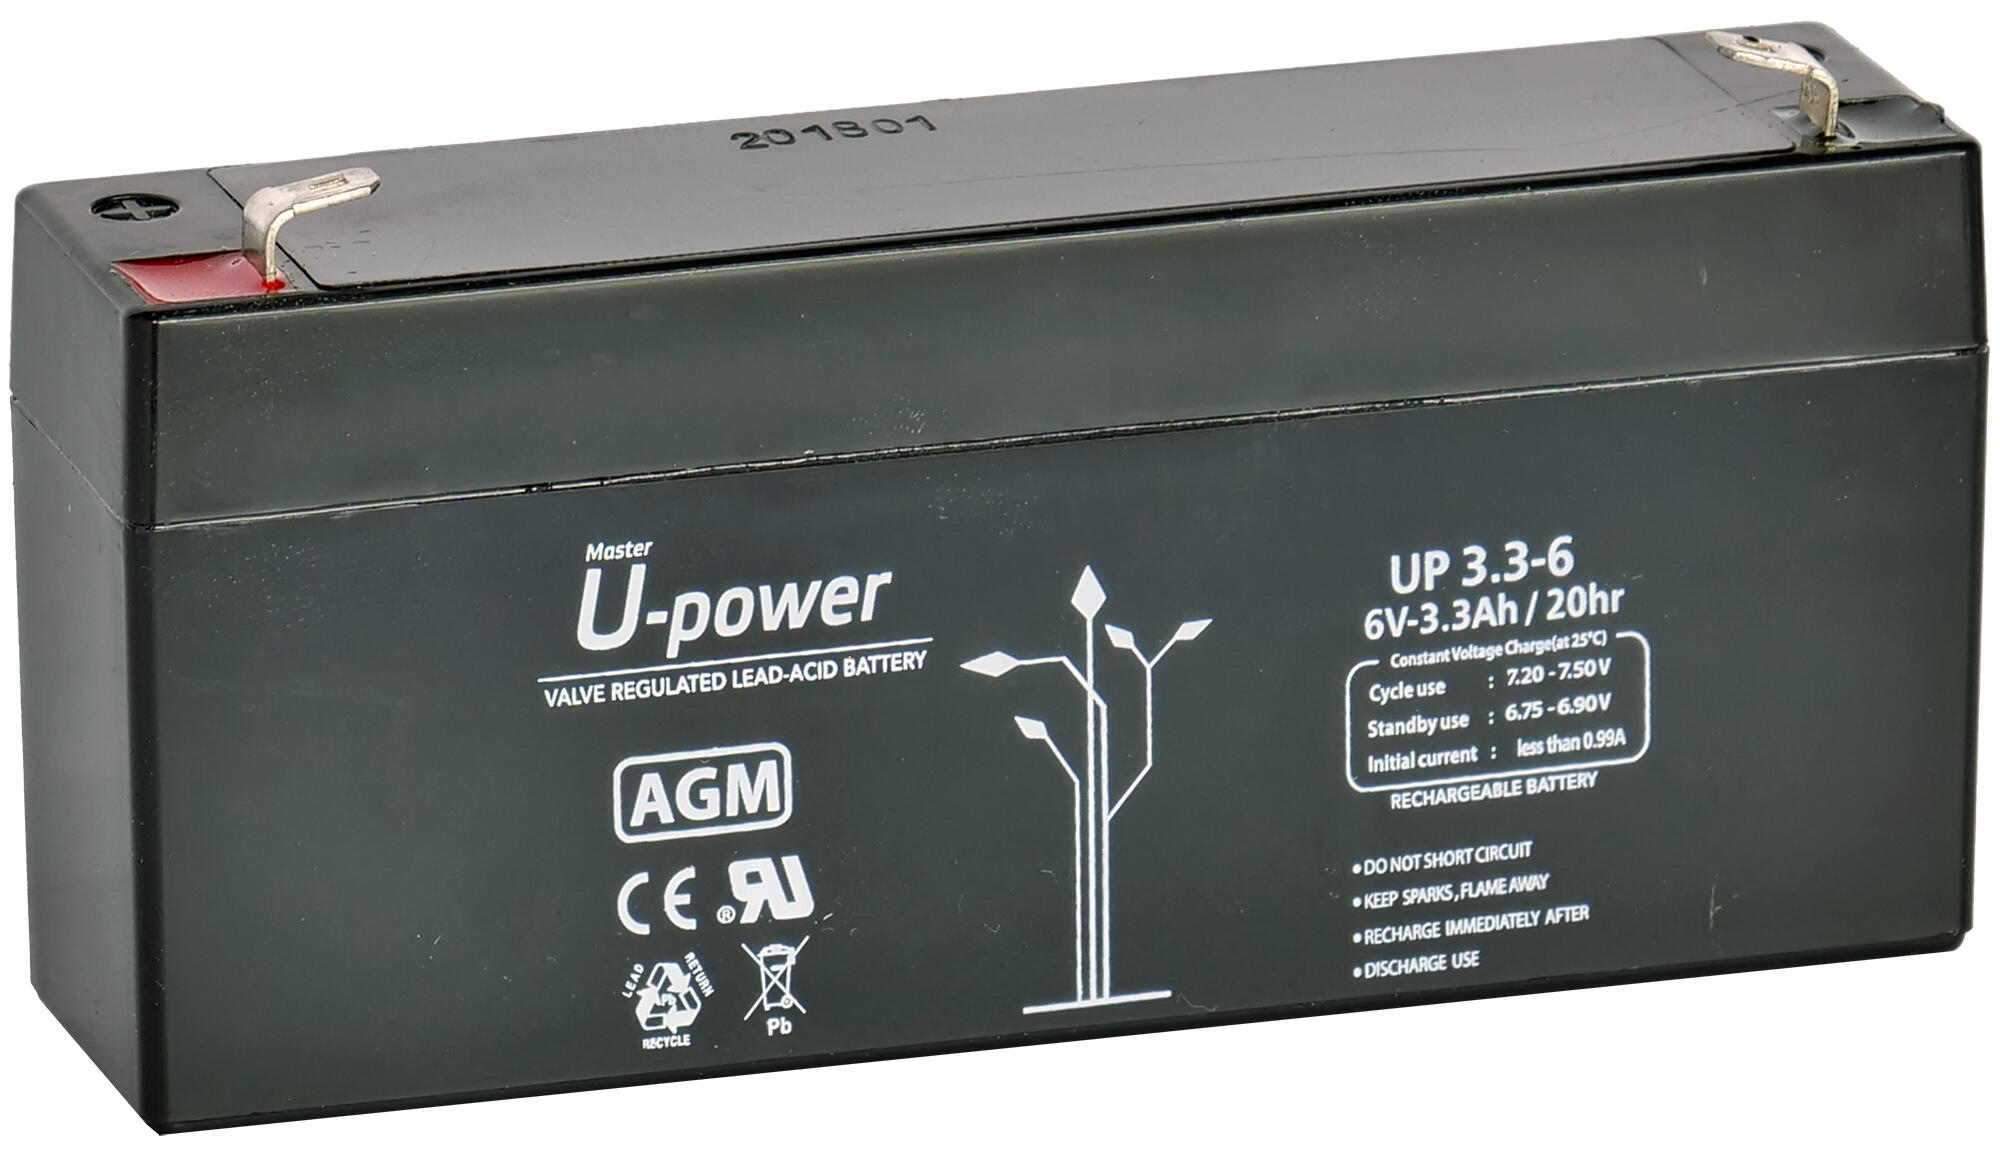 Batería solar agm u-power 6v 3.3ah